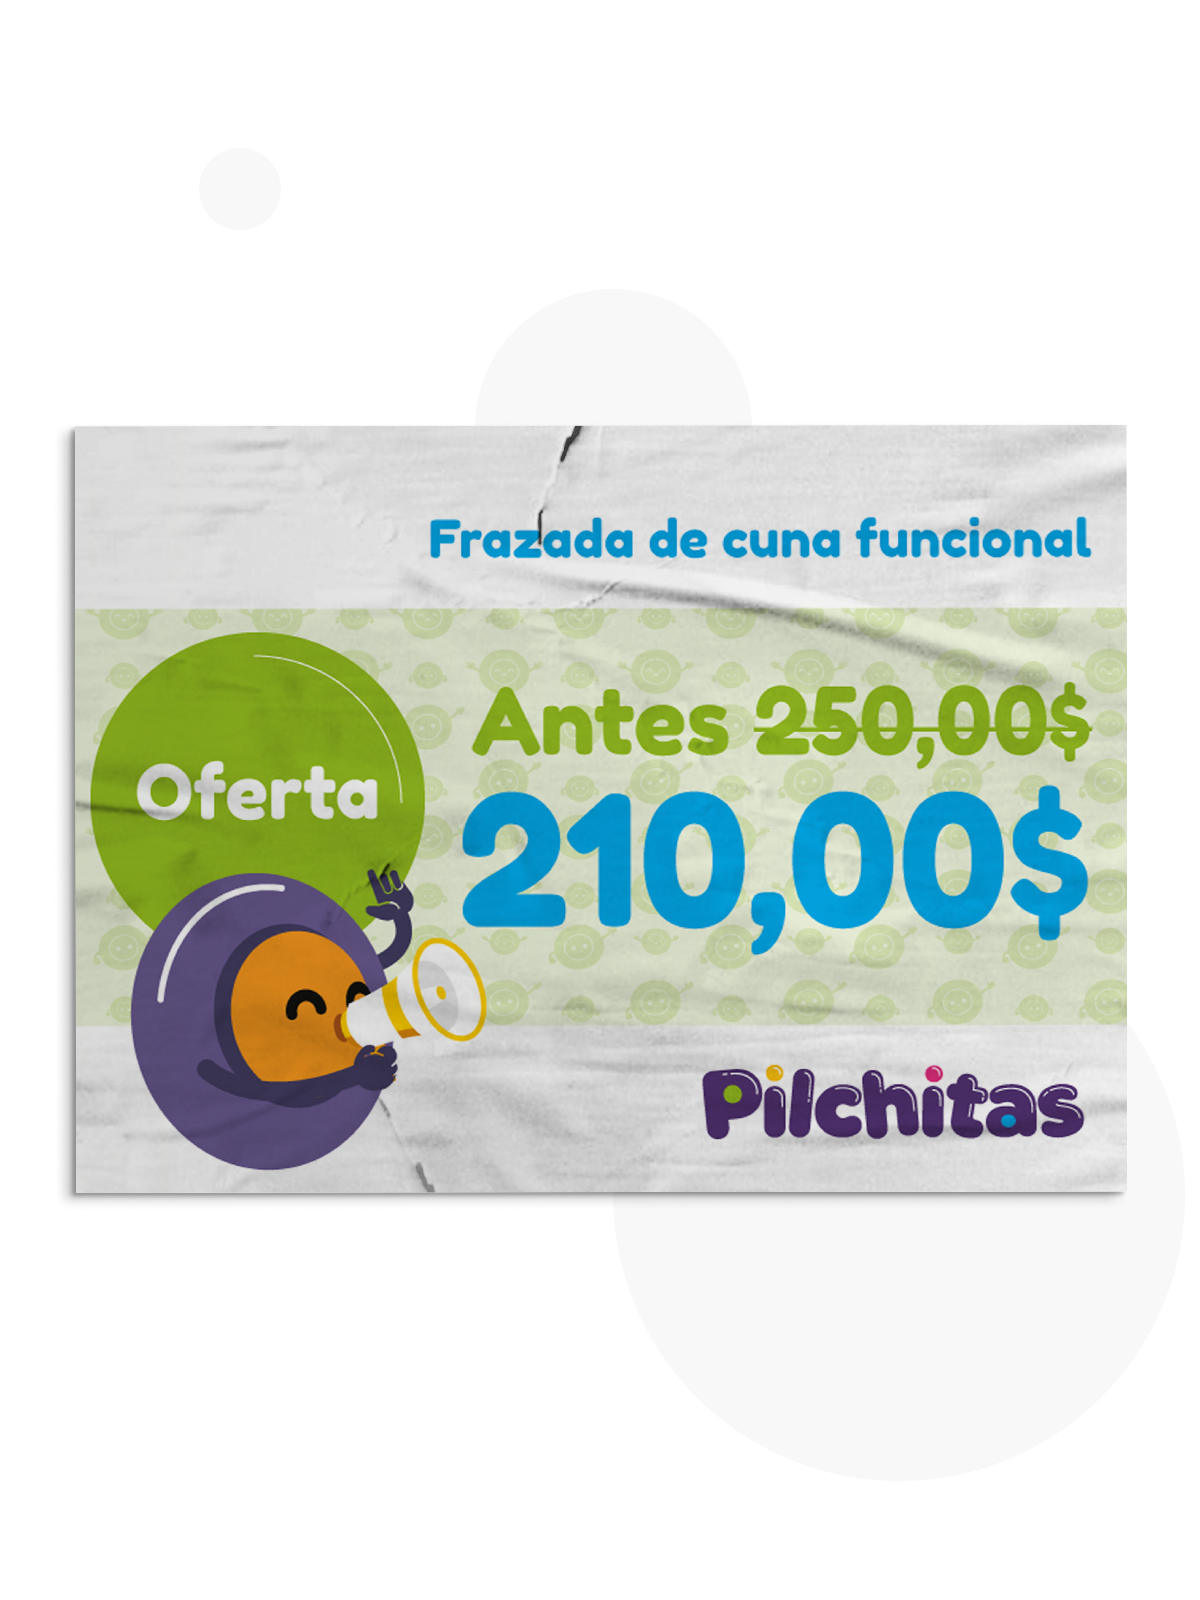 Pilchitas - Identidad / Interactivo / Servicios Complementarios / PACKAGING /  Editorial / Redes Sociales - Aguaviva - Dejamos Marcas